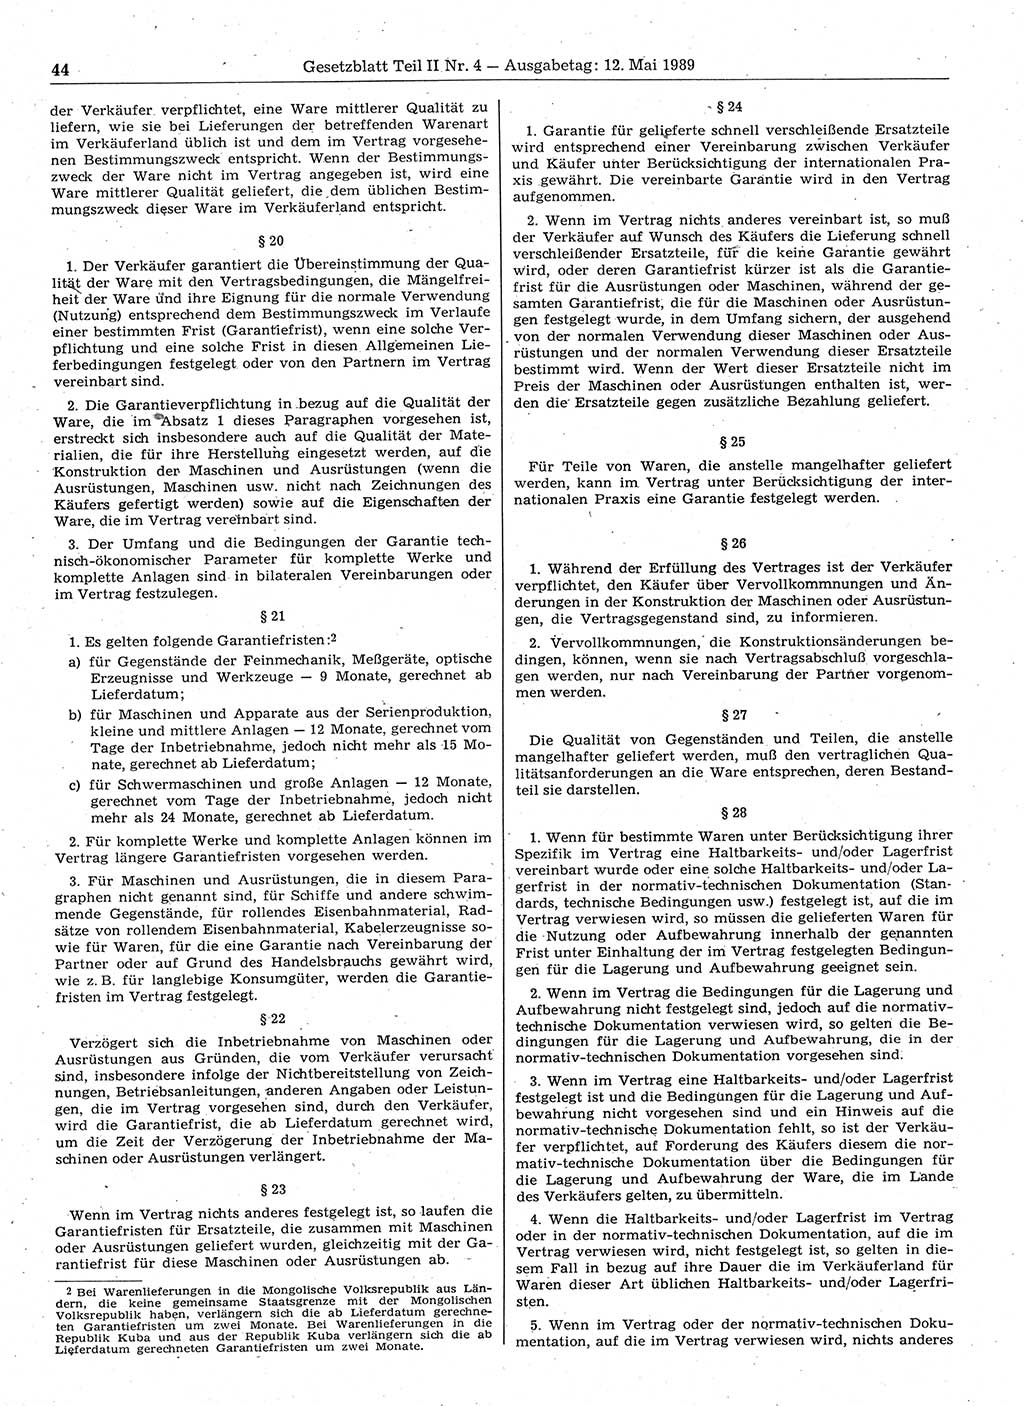 Gesetzblatt (GBl.) der Deutschen Demokratischen Republik (DDR) Teil ⅠⅠ 1989, Seite 44 (GBl. DDR ⅠⅠ 1989, S. 44)